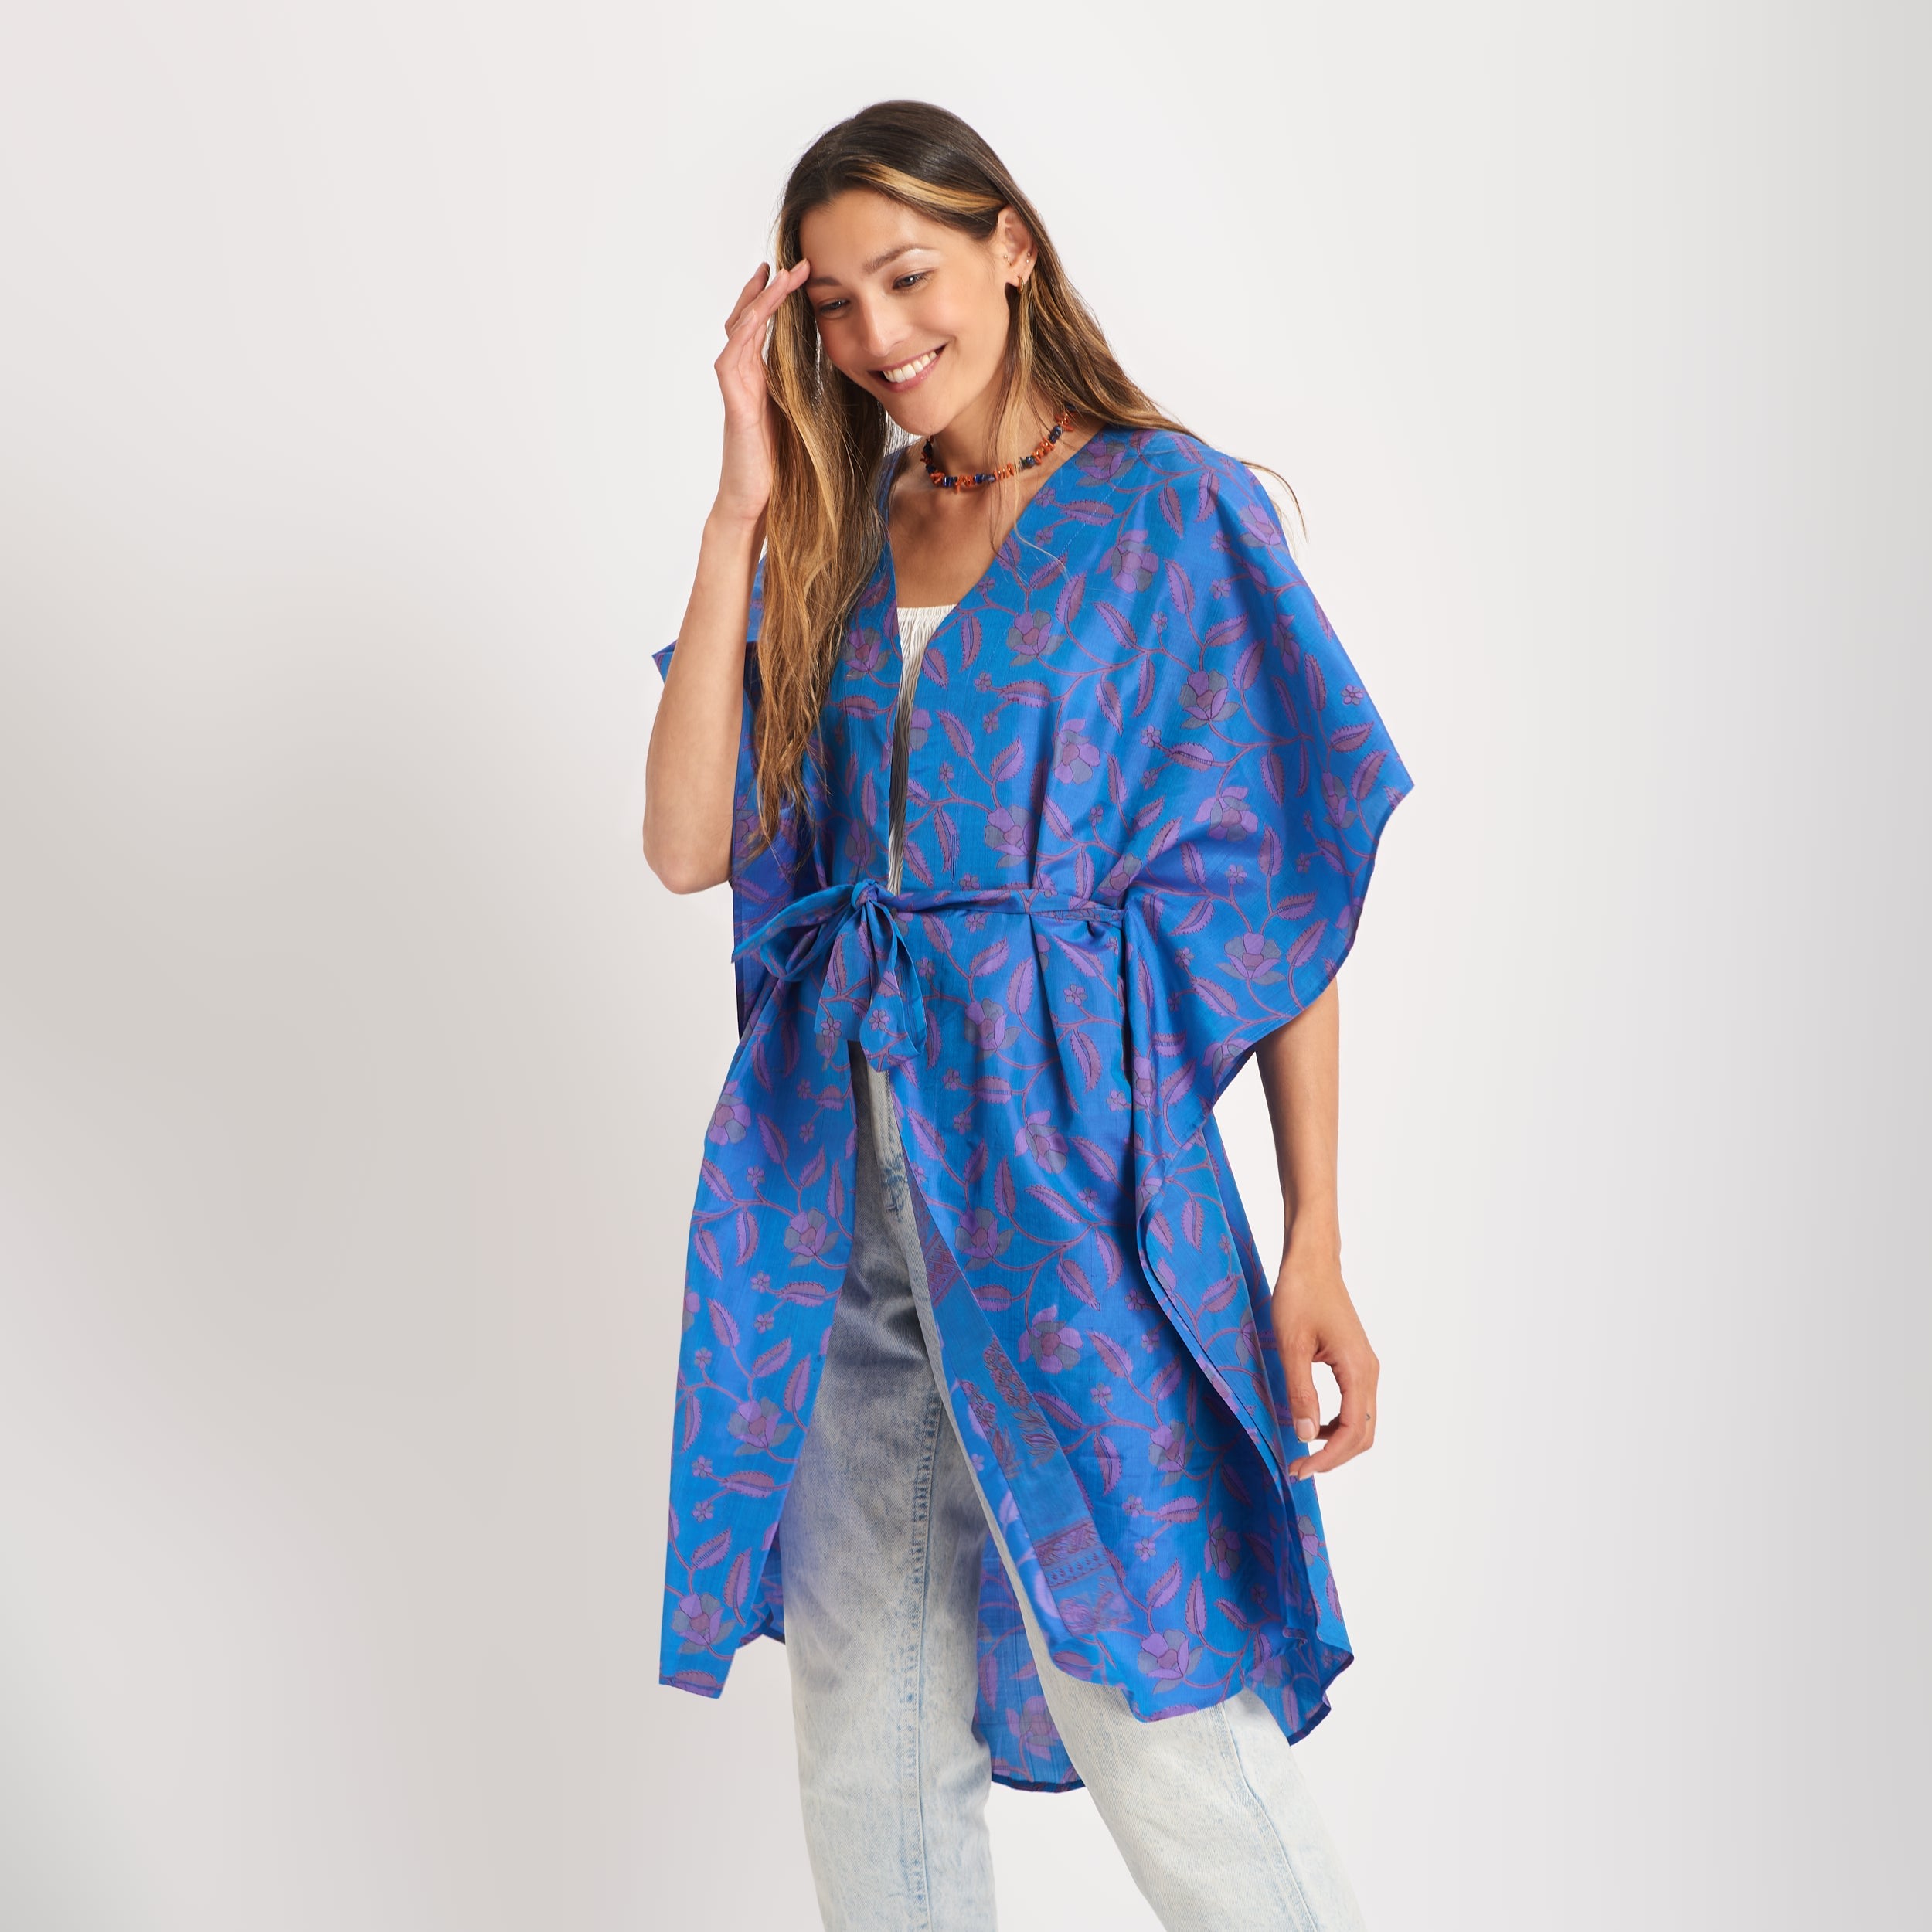 Neem - Vintage Silk Sari Indigo Blue Floral Print Kimono Style Wrap Dress